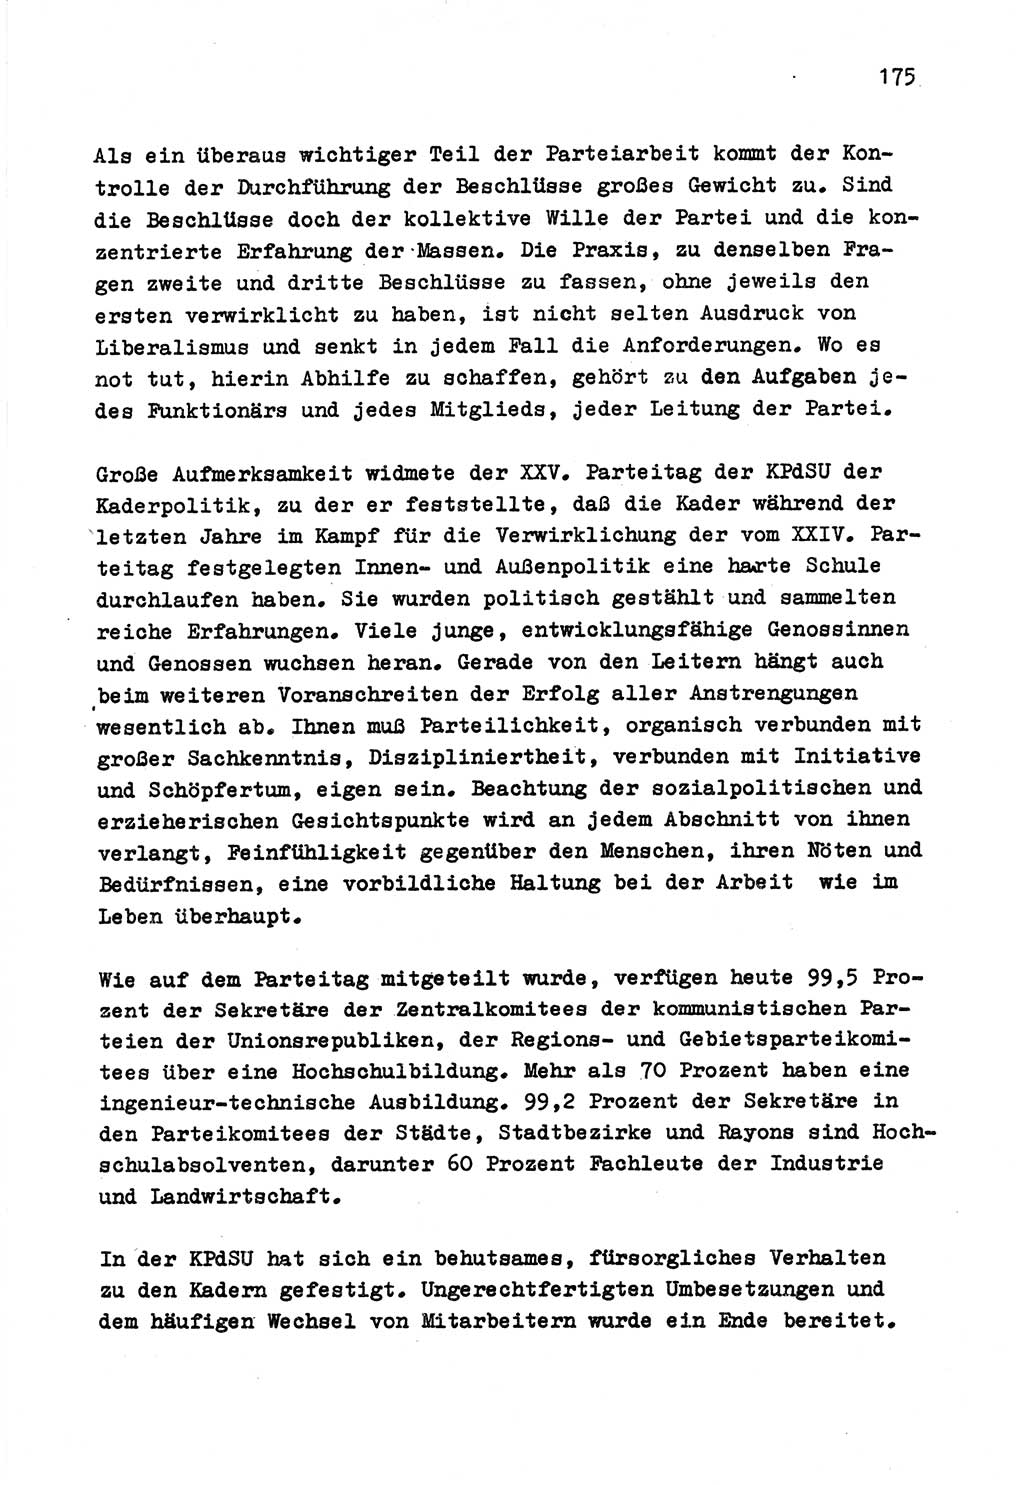 Zu Fragen der Parteiarbeit [Sozialistische Einheitspartei Deutschlands (SED) Deutsche Demokratische Republik (DDR)] 1979, Seite 175 (Fr. PA SED DDR 1979, S. 175)